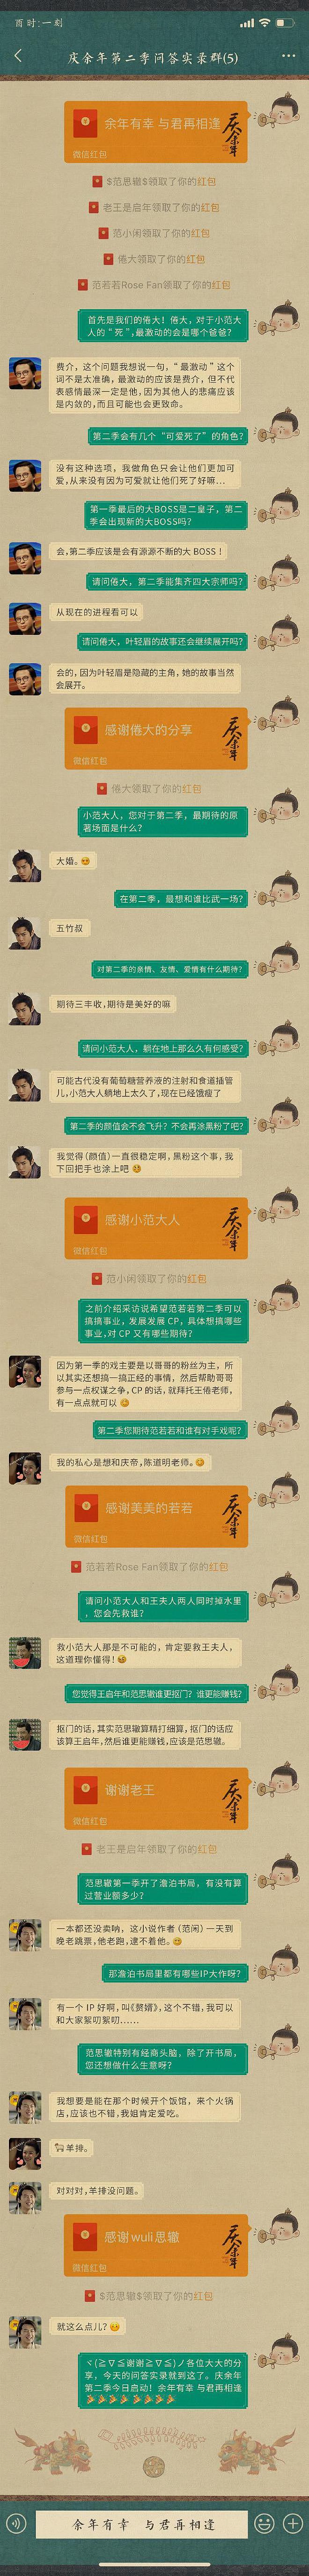 《庆余年2》报设计公司道歉 与版权方积极沟通中